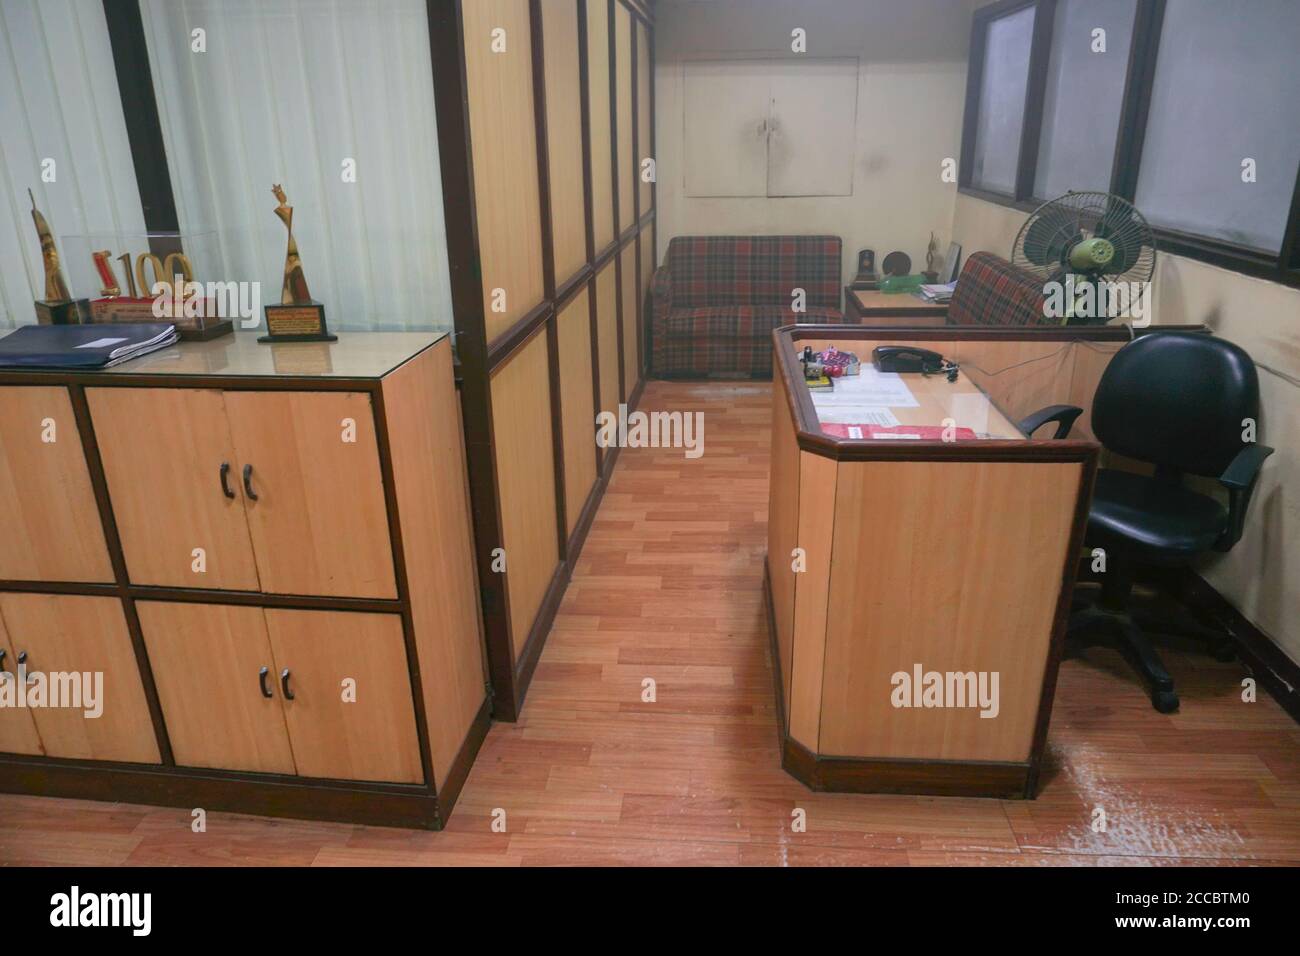 Kolkata, Westbengalen, Indien - 21. Juni 2020 : ein Büroraum nach der Verwendung von Desinfektionsspray füllte Sanitisierungsrauch die Luft. Desinfizierter Raum. Stockfoto